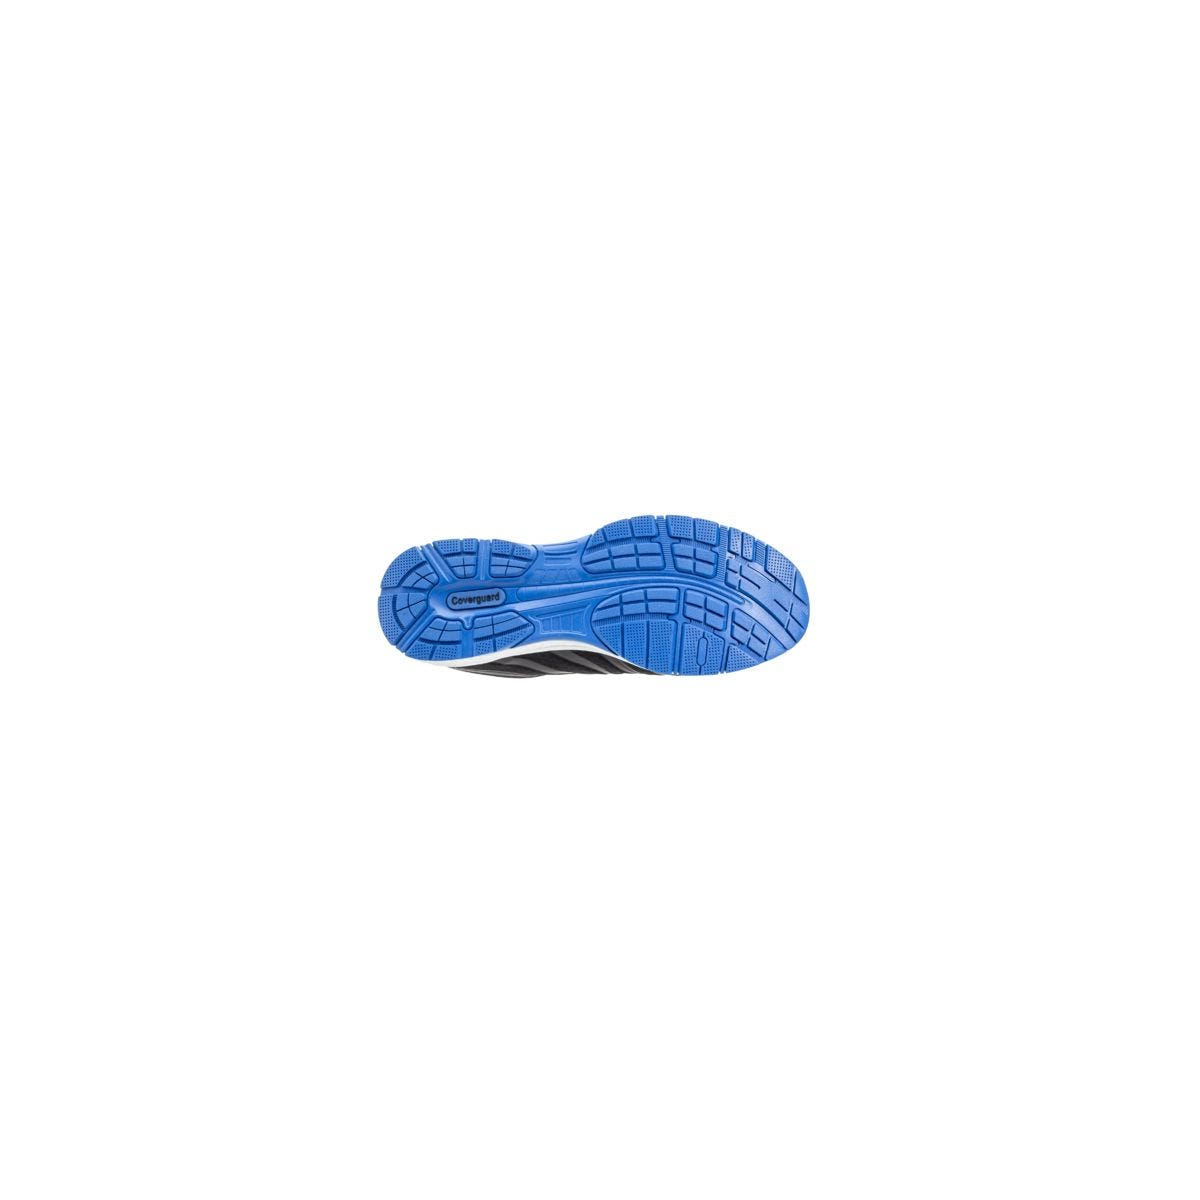 Chaussures de sécurité S1P GALAXITE Basse Maille Noir Bleu ESD - COVERGUARD - Taille 43 1